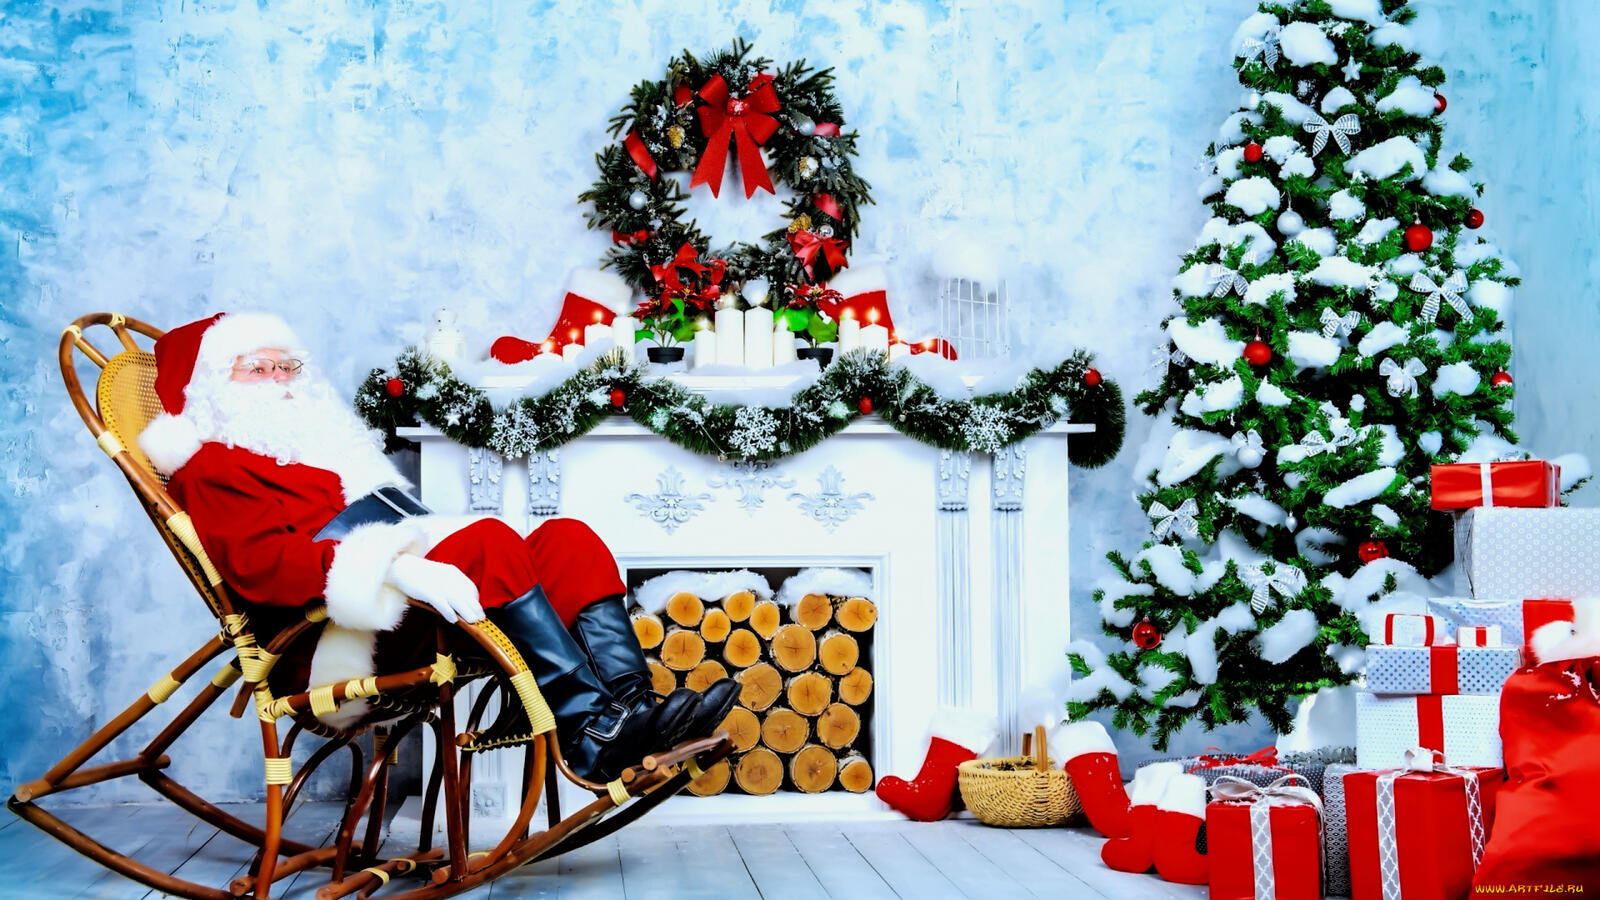 Бесплатное фото Санта на кресле качалке рядом с новогодней елкой